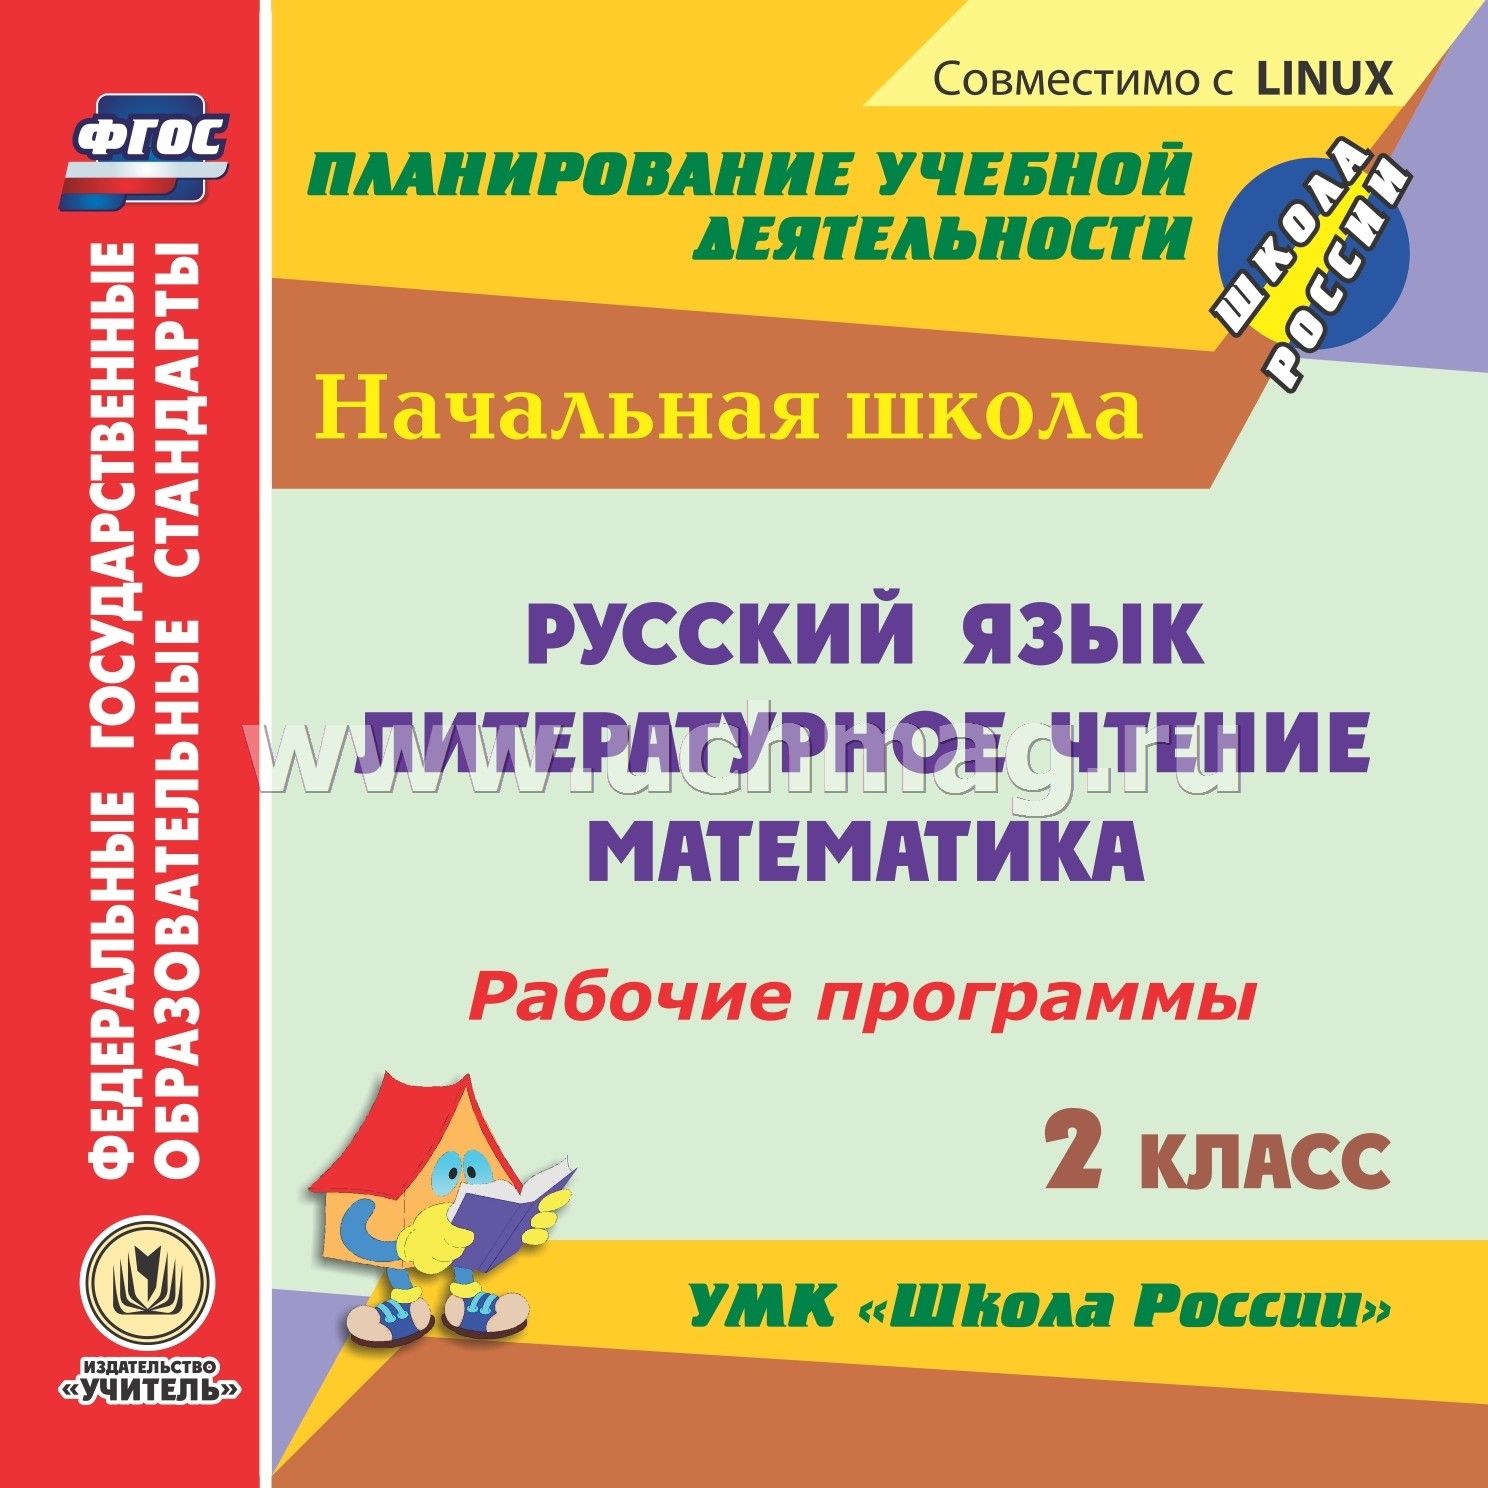 Умк школа россии 2 класс компакт-диск для компьютера: русский язык